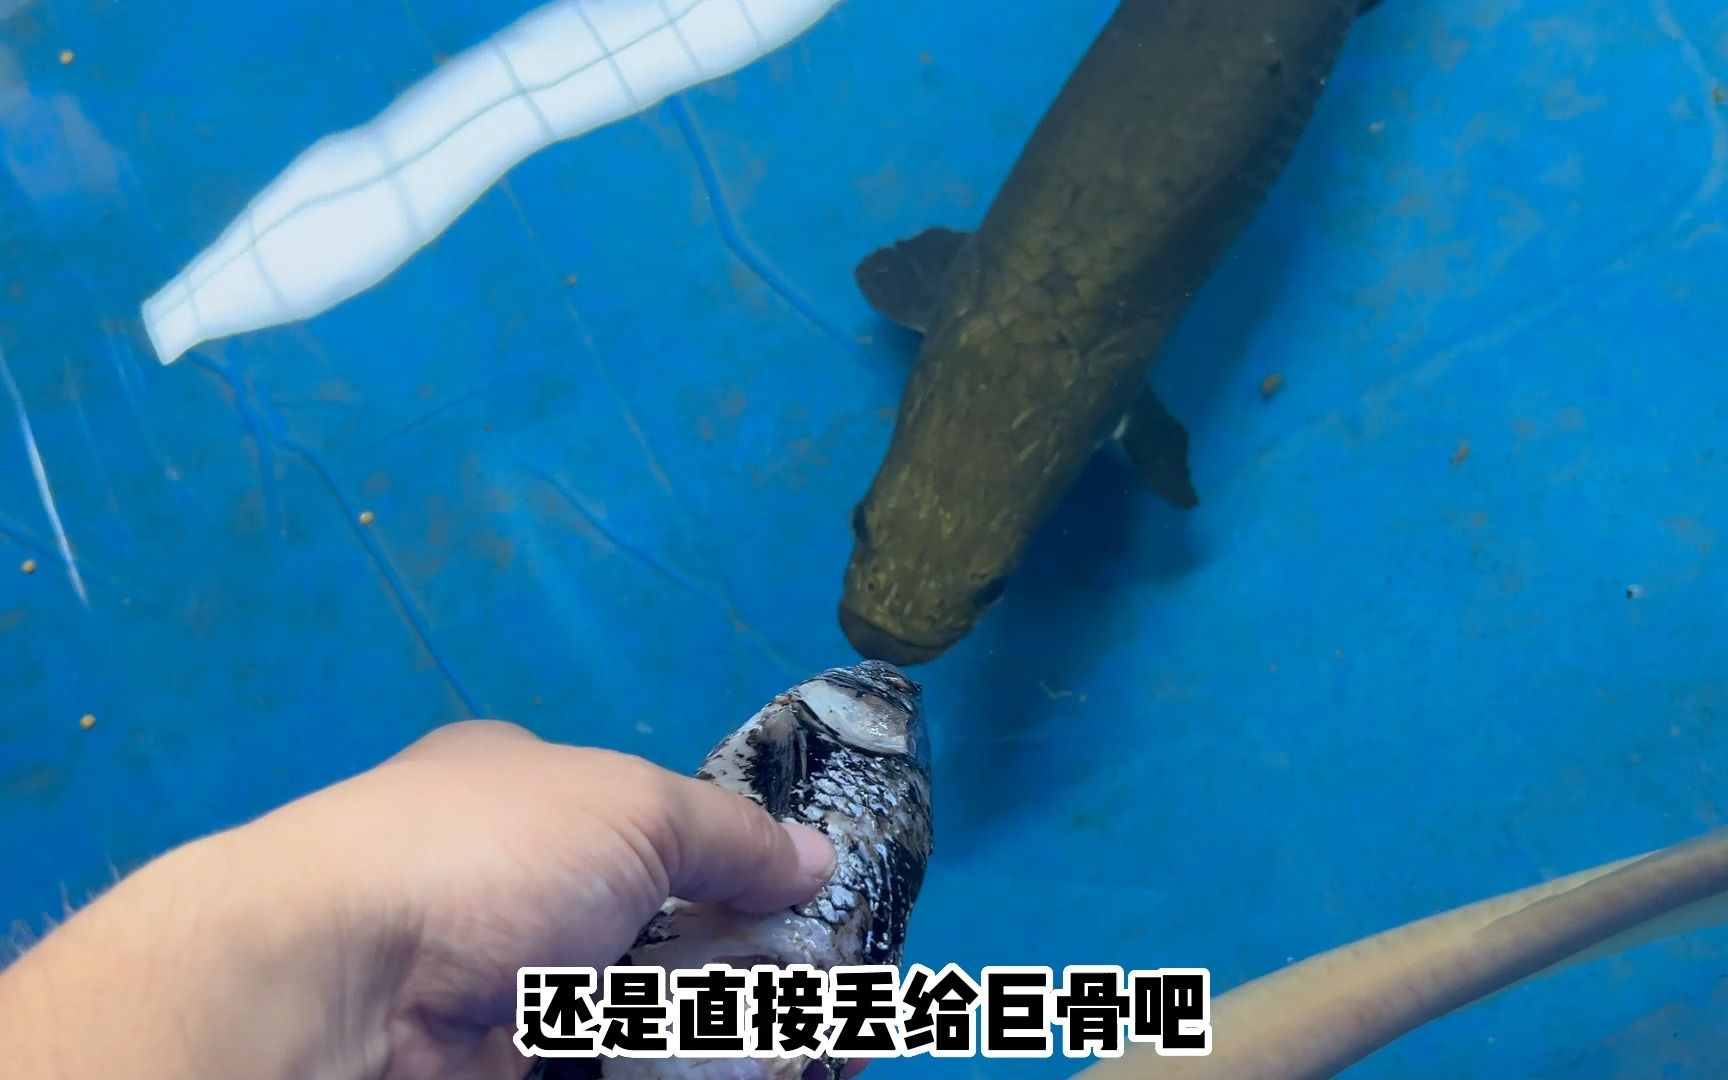 大铅笔鱼vs食人鱼图片